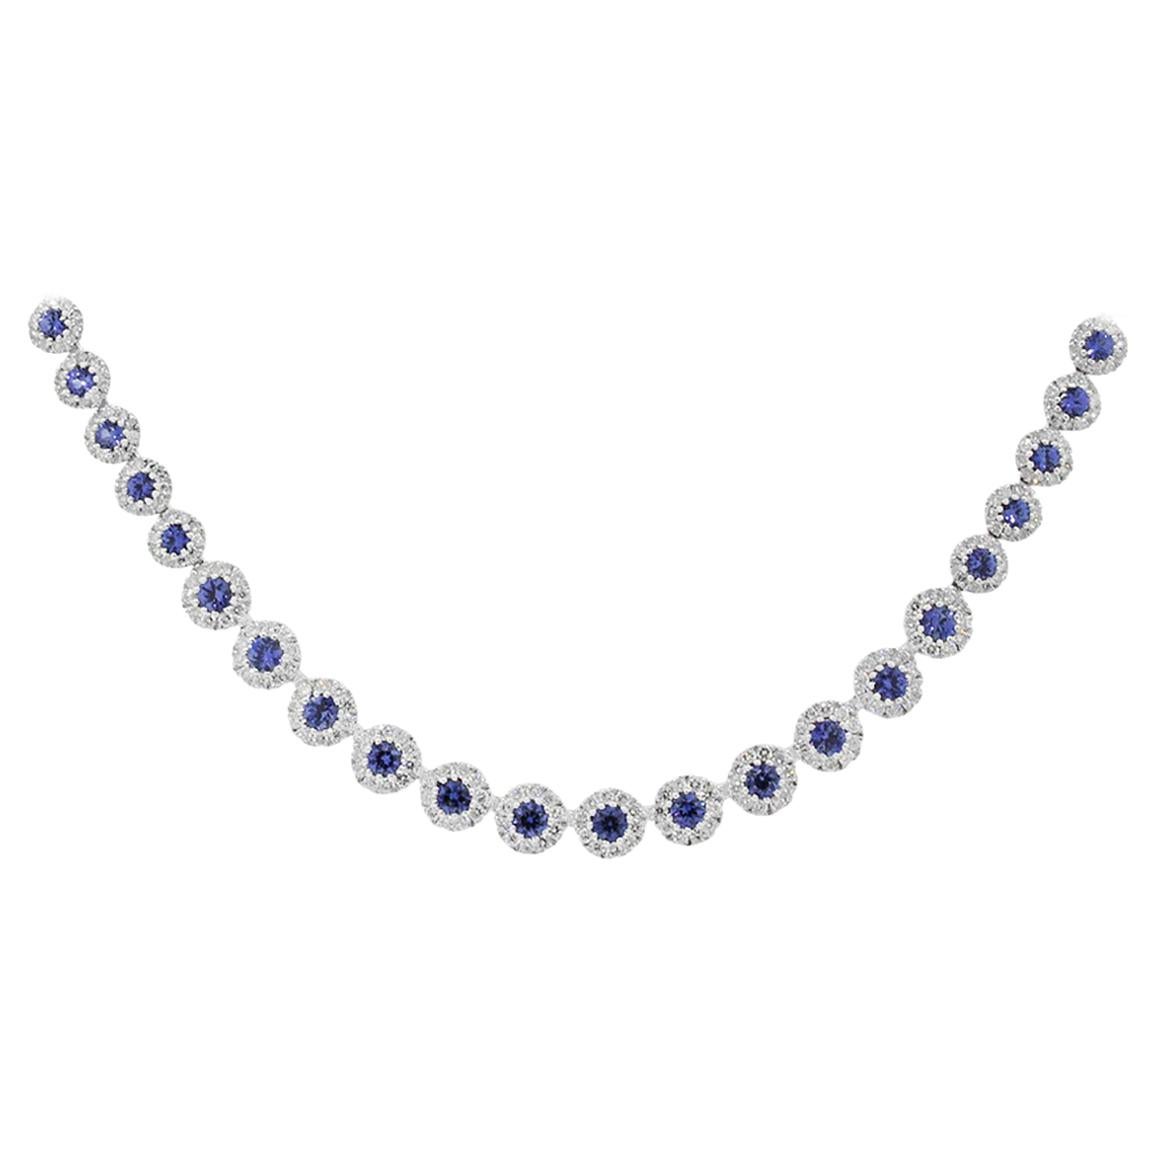 6.55 Carat Blue Sapphire Necklace